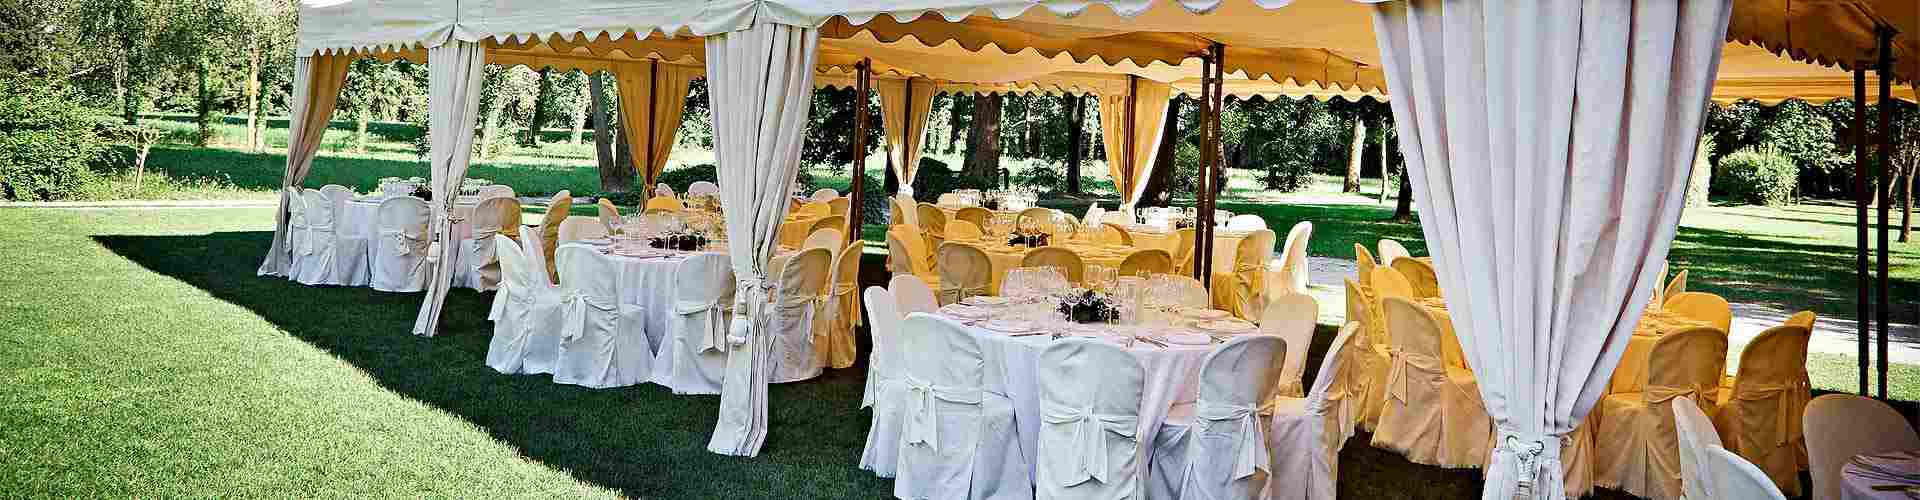 Restaurantes para bodas 2019 en Castellnovo